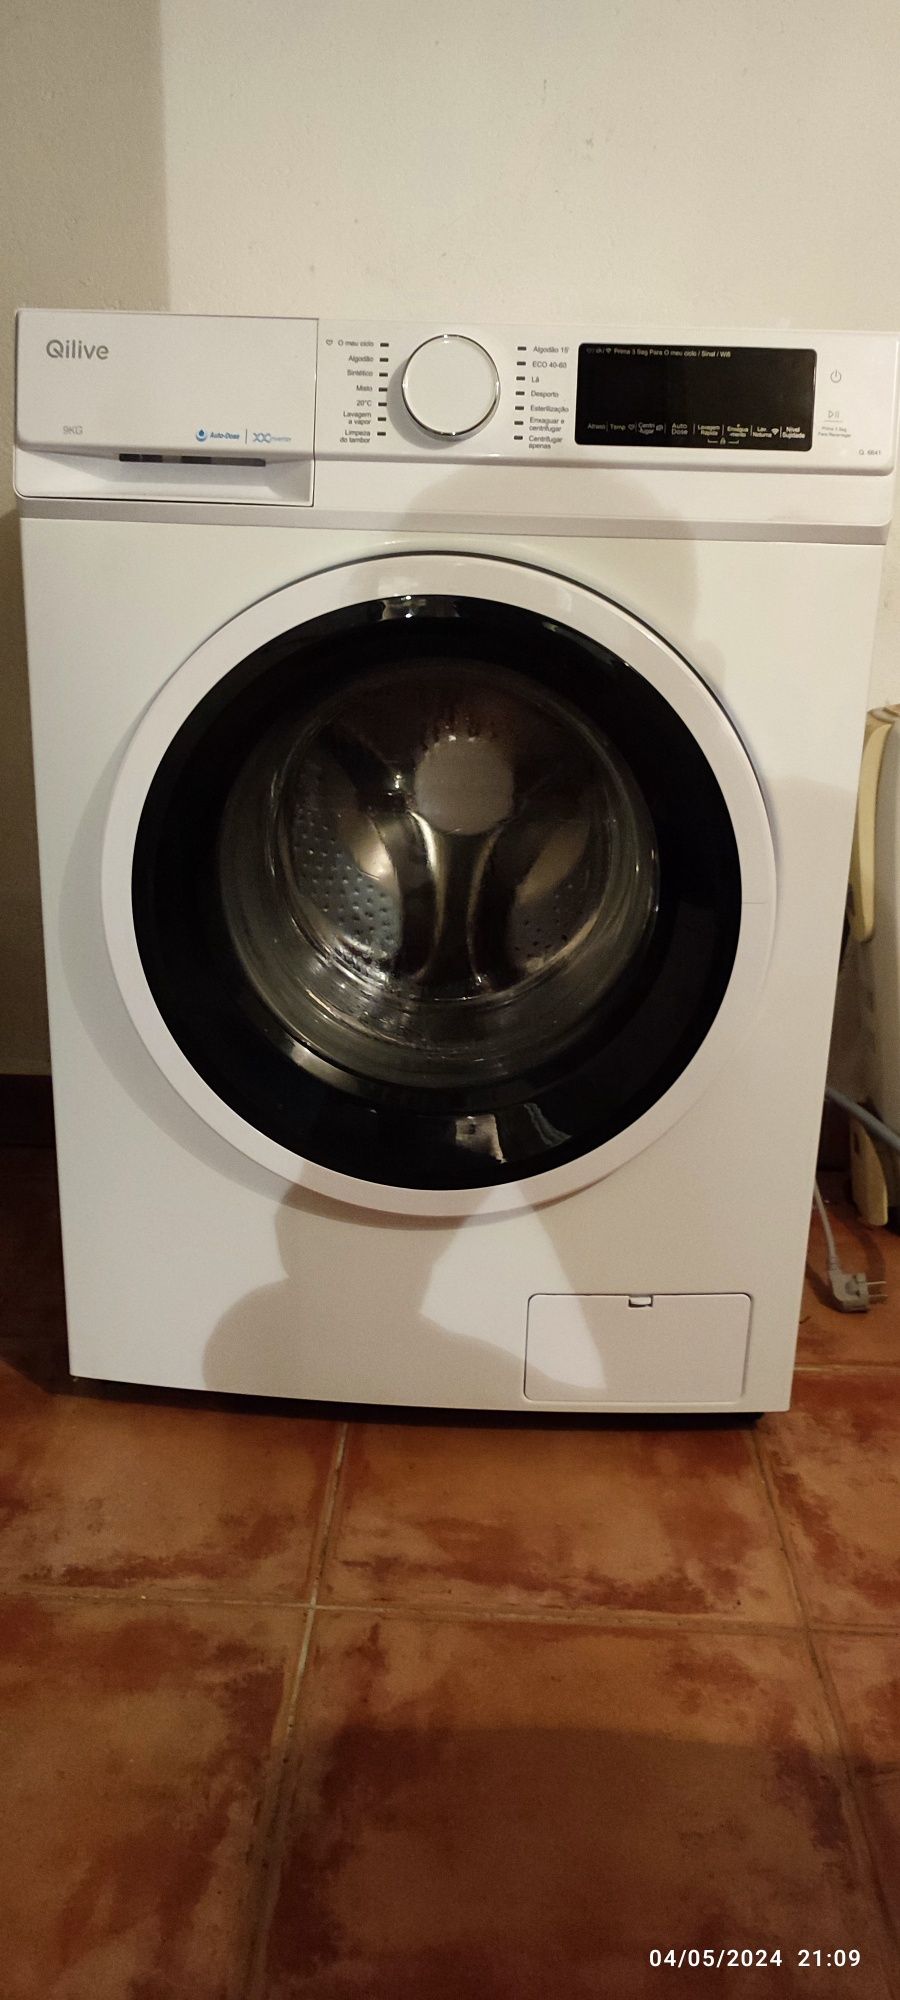 Máquina de lavar roupa Qilive